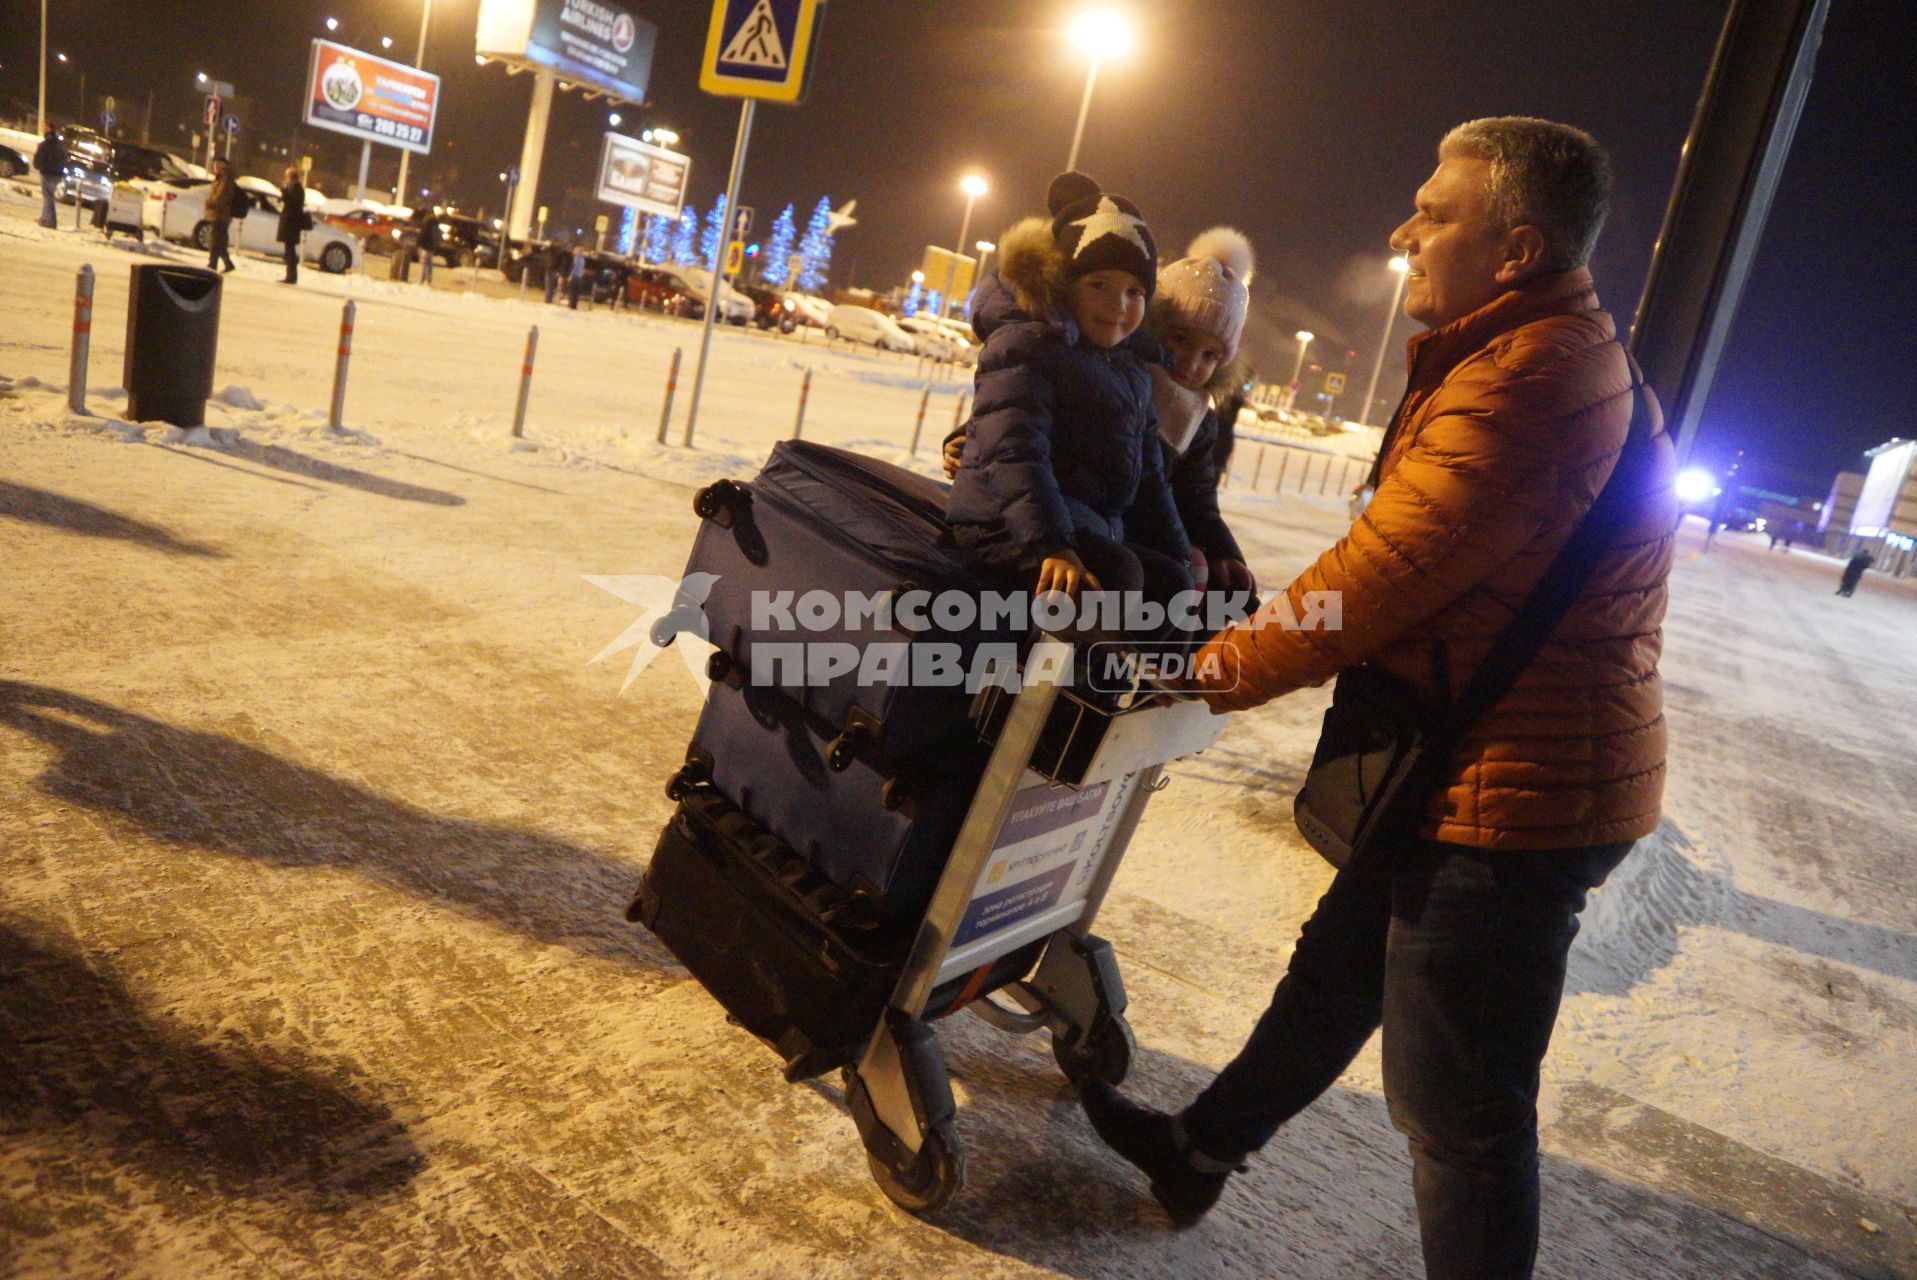 Екатеринбург. Аэропорт Кольцово. Мужчина везет детей, сидящих верхом на чемоданах.